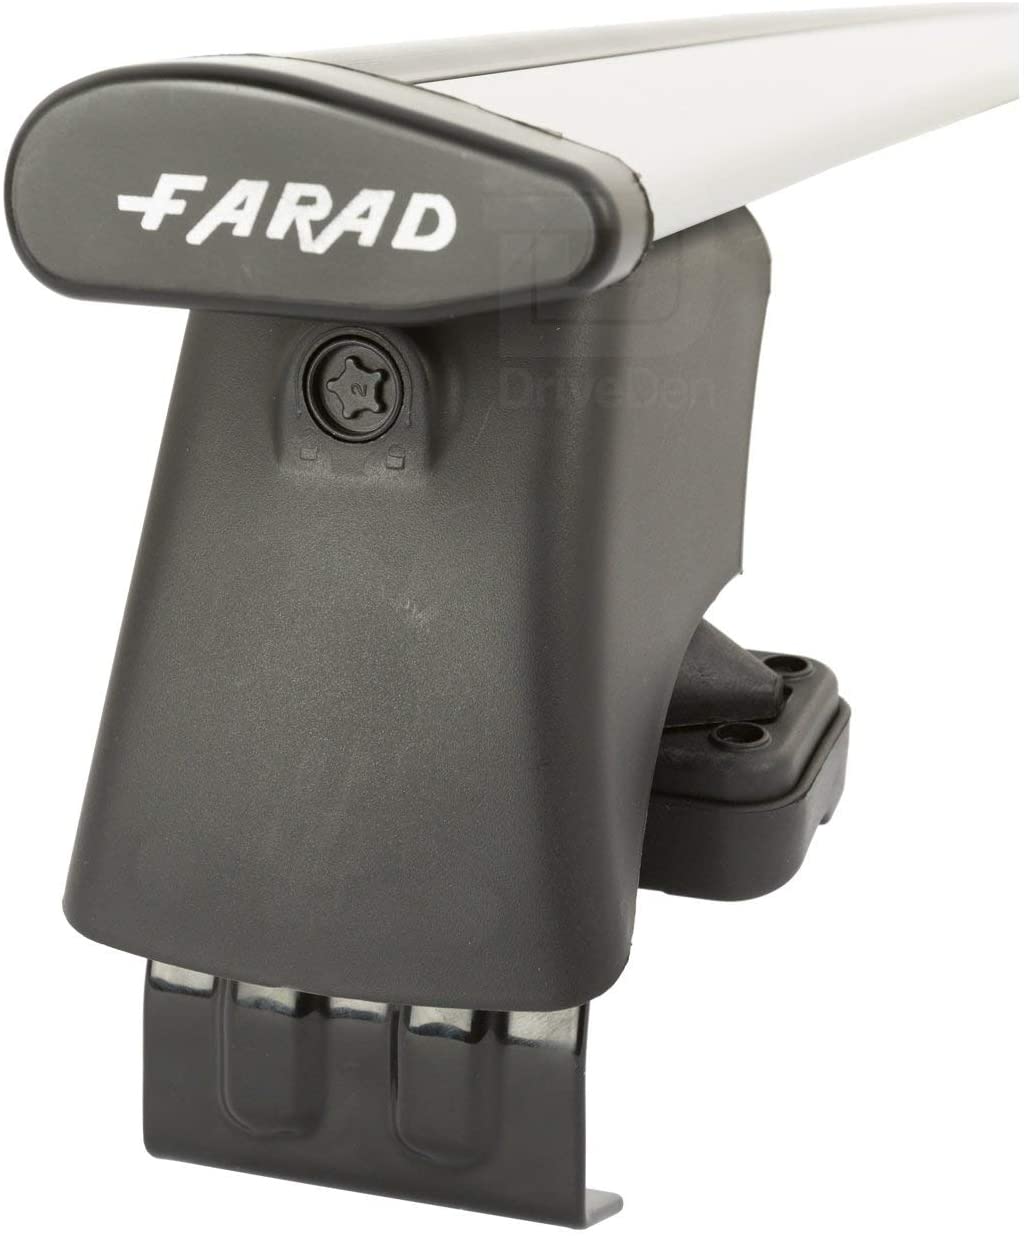 FARAD-Kit H2 per barre portatutto - Kia Soul 2009> (senza corrimano)